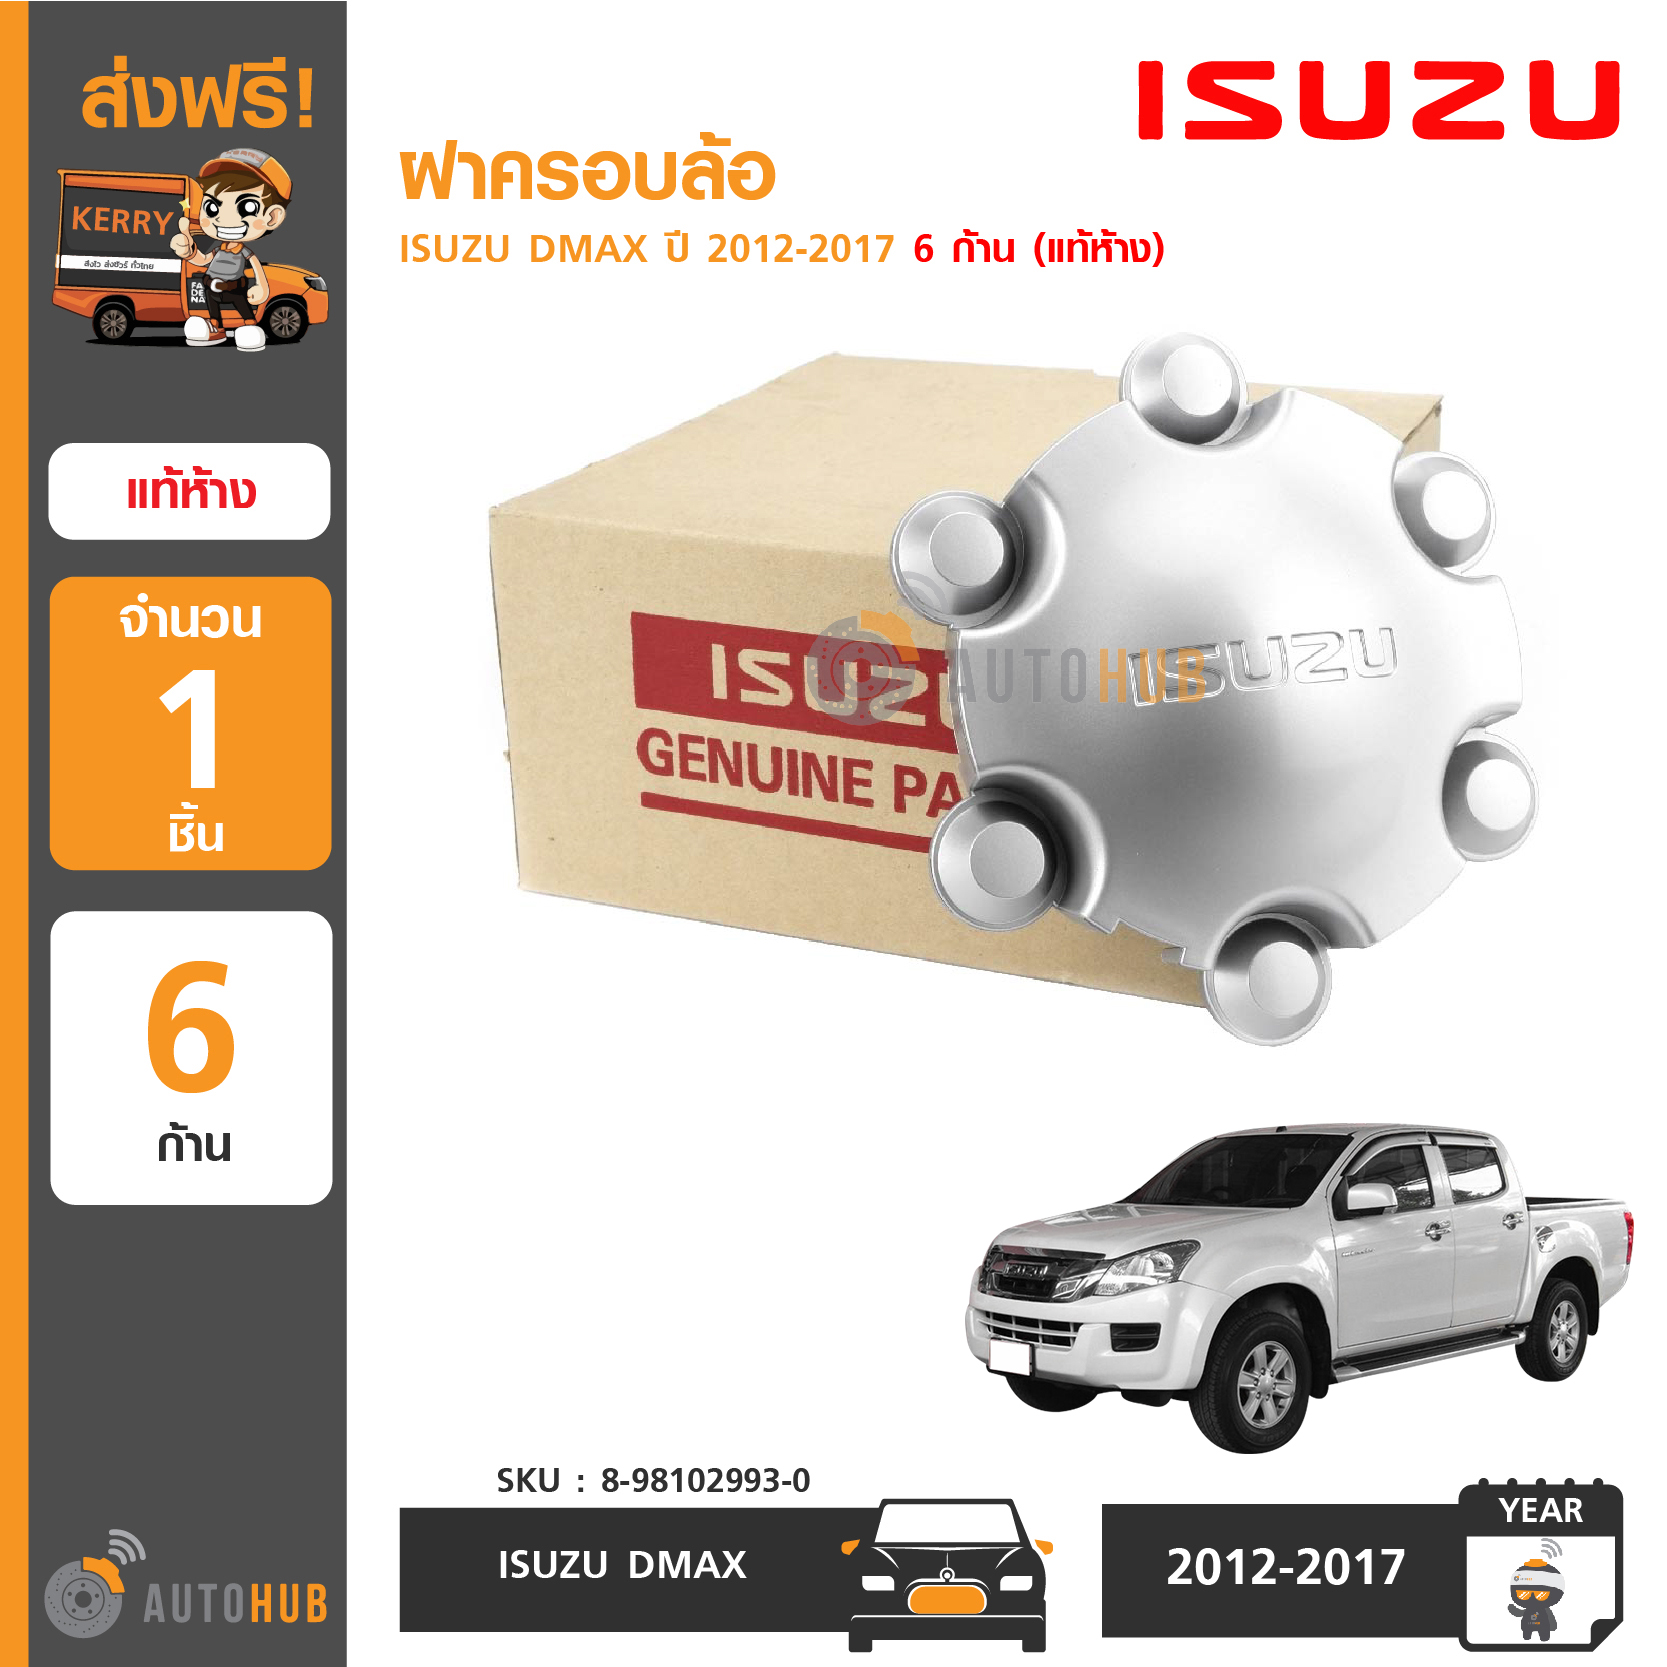 ISUZU ฝาครอบล้อ ฝาครอบดุมล้อ ISUZU Dmax ปี 2012-2017 6 ก้าน ของแท้ห้าง จากศูนย์อีซูซุ (8-98102993-0)